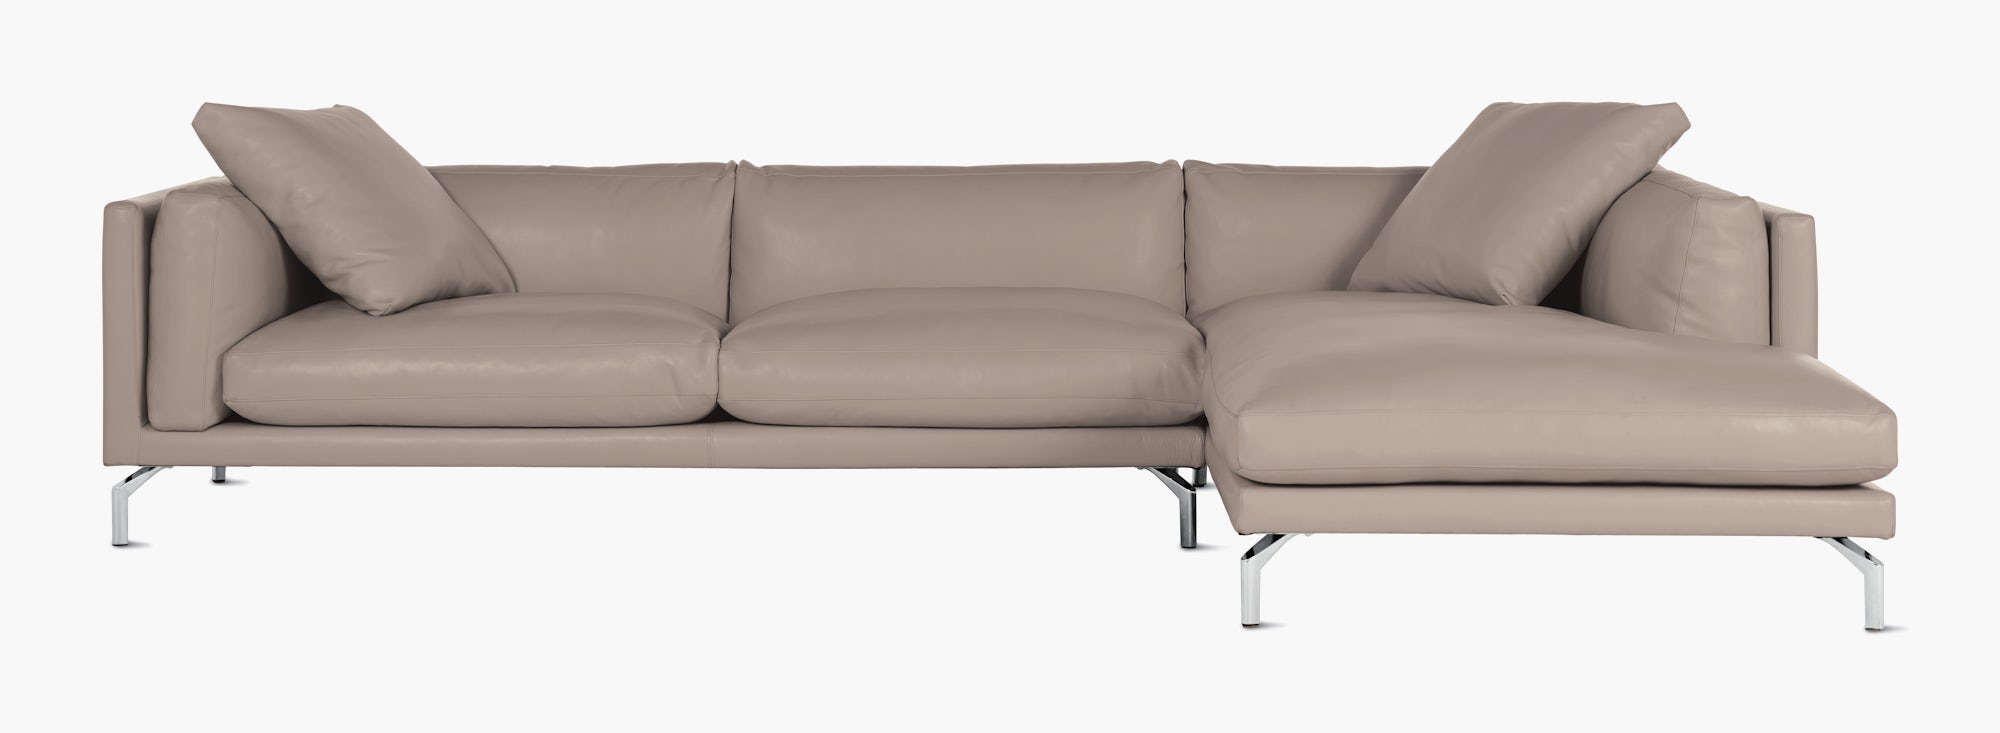 Como Sectional Sofa Design Within Reach